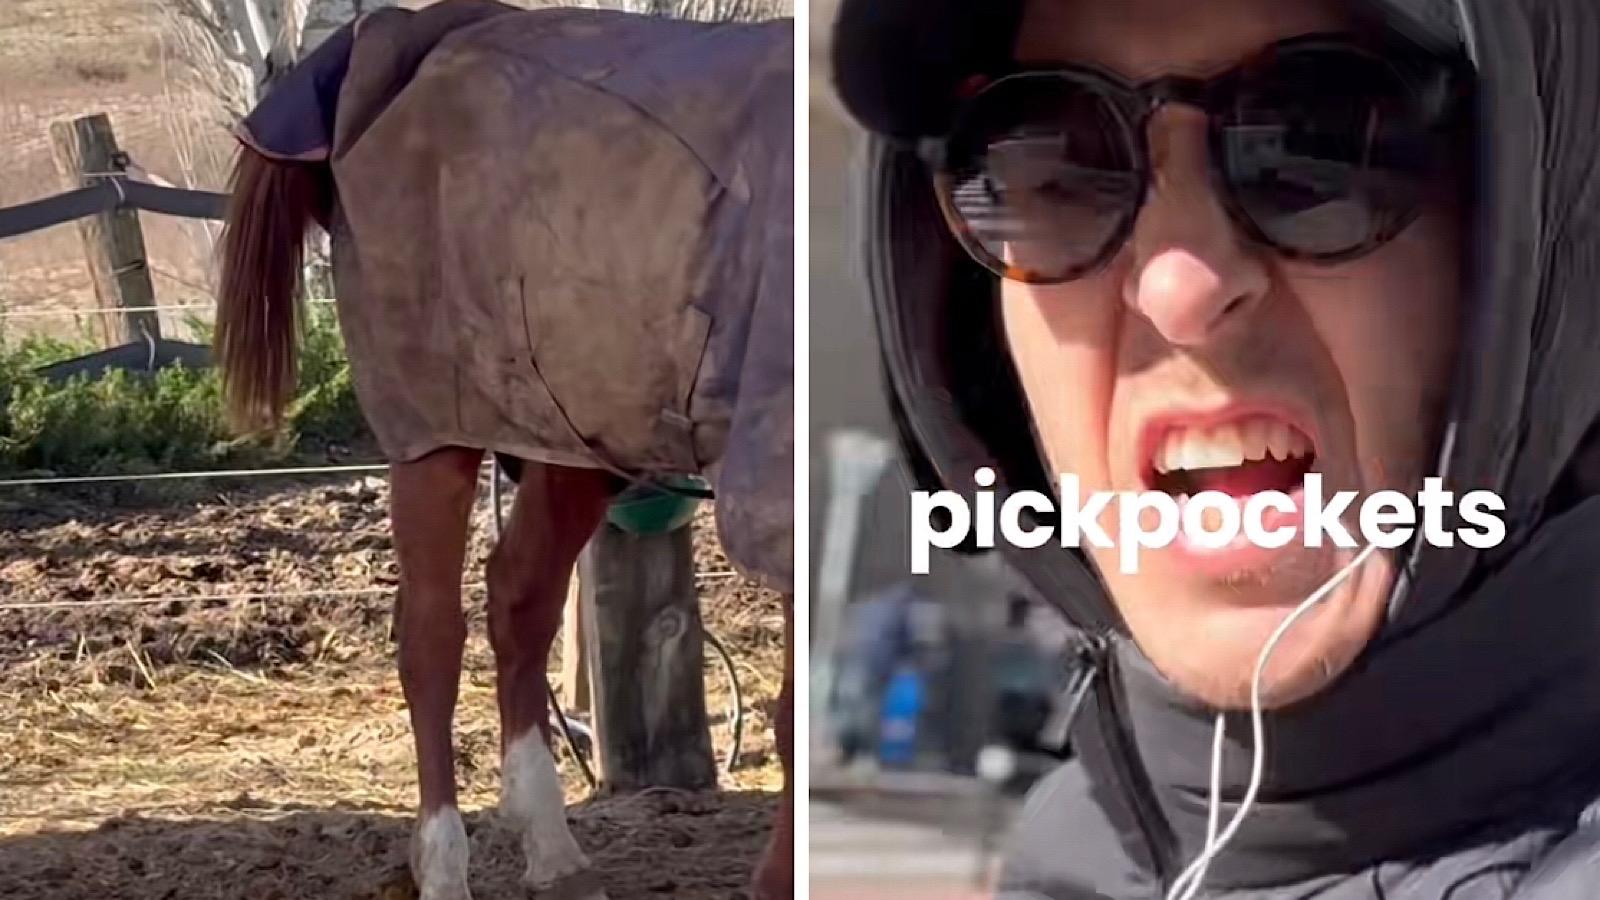 man gets revenge on pickpockets with horse poop